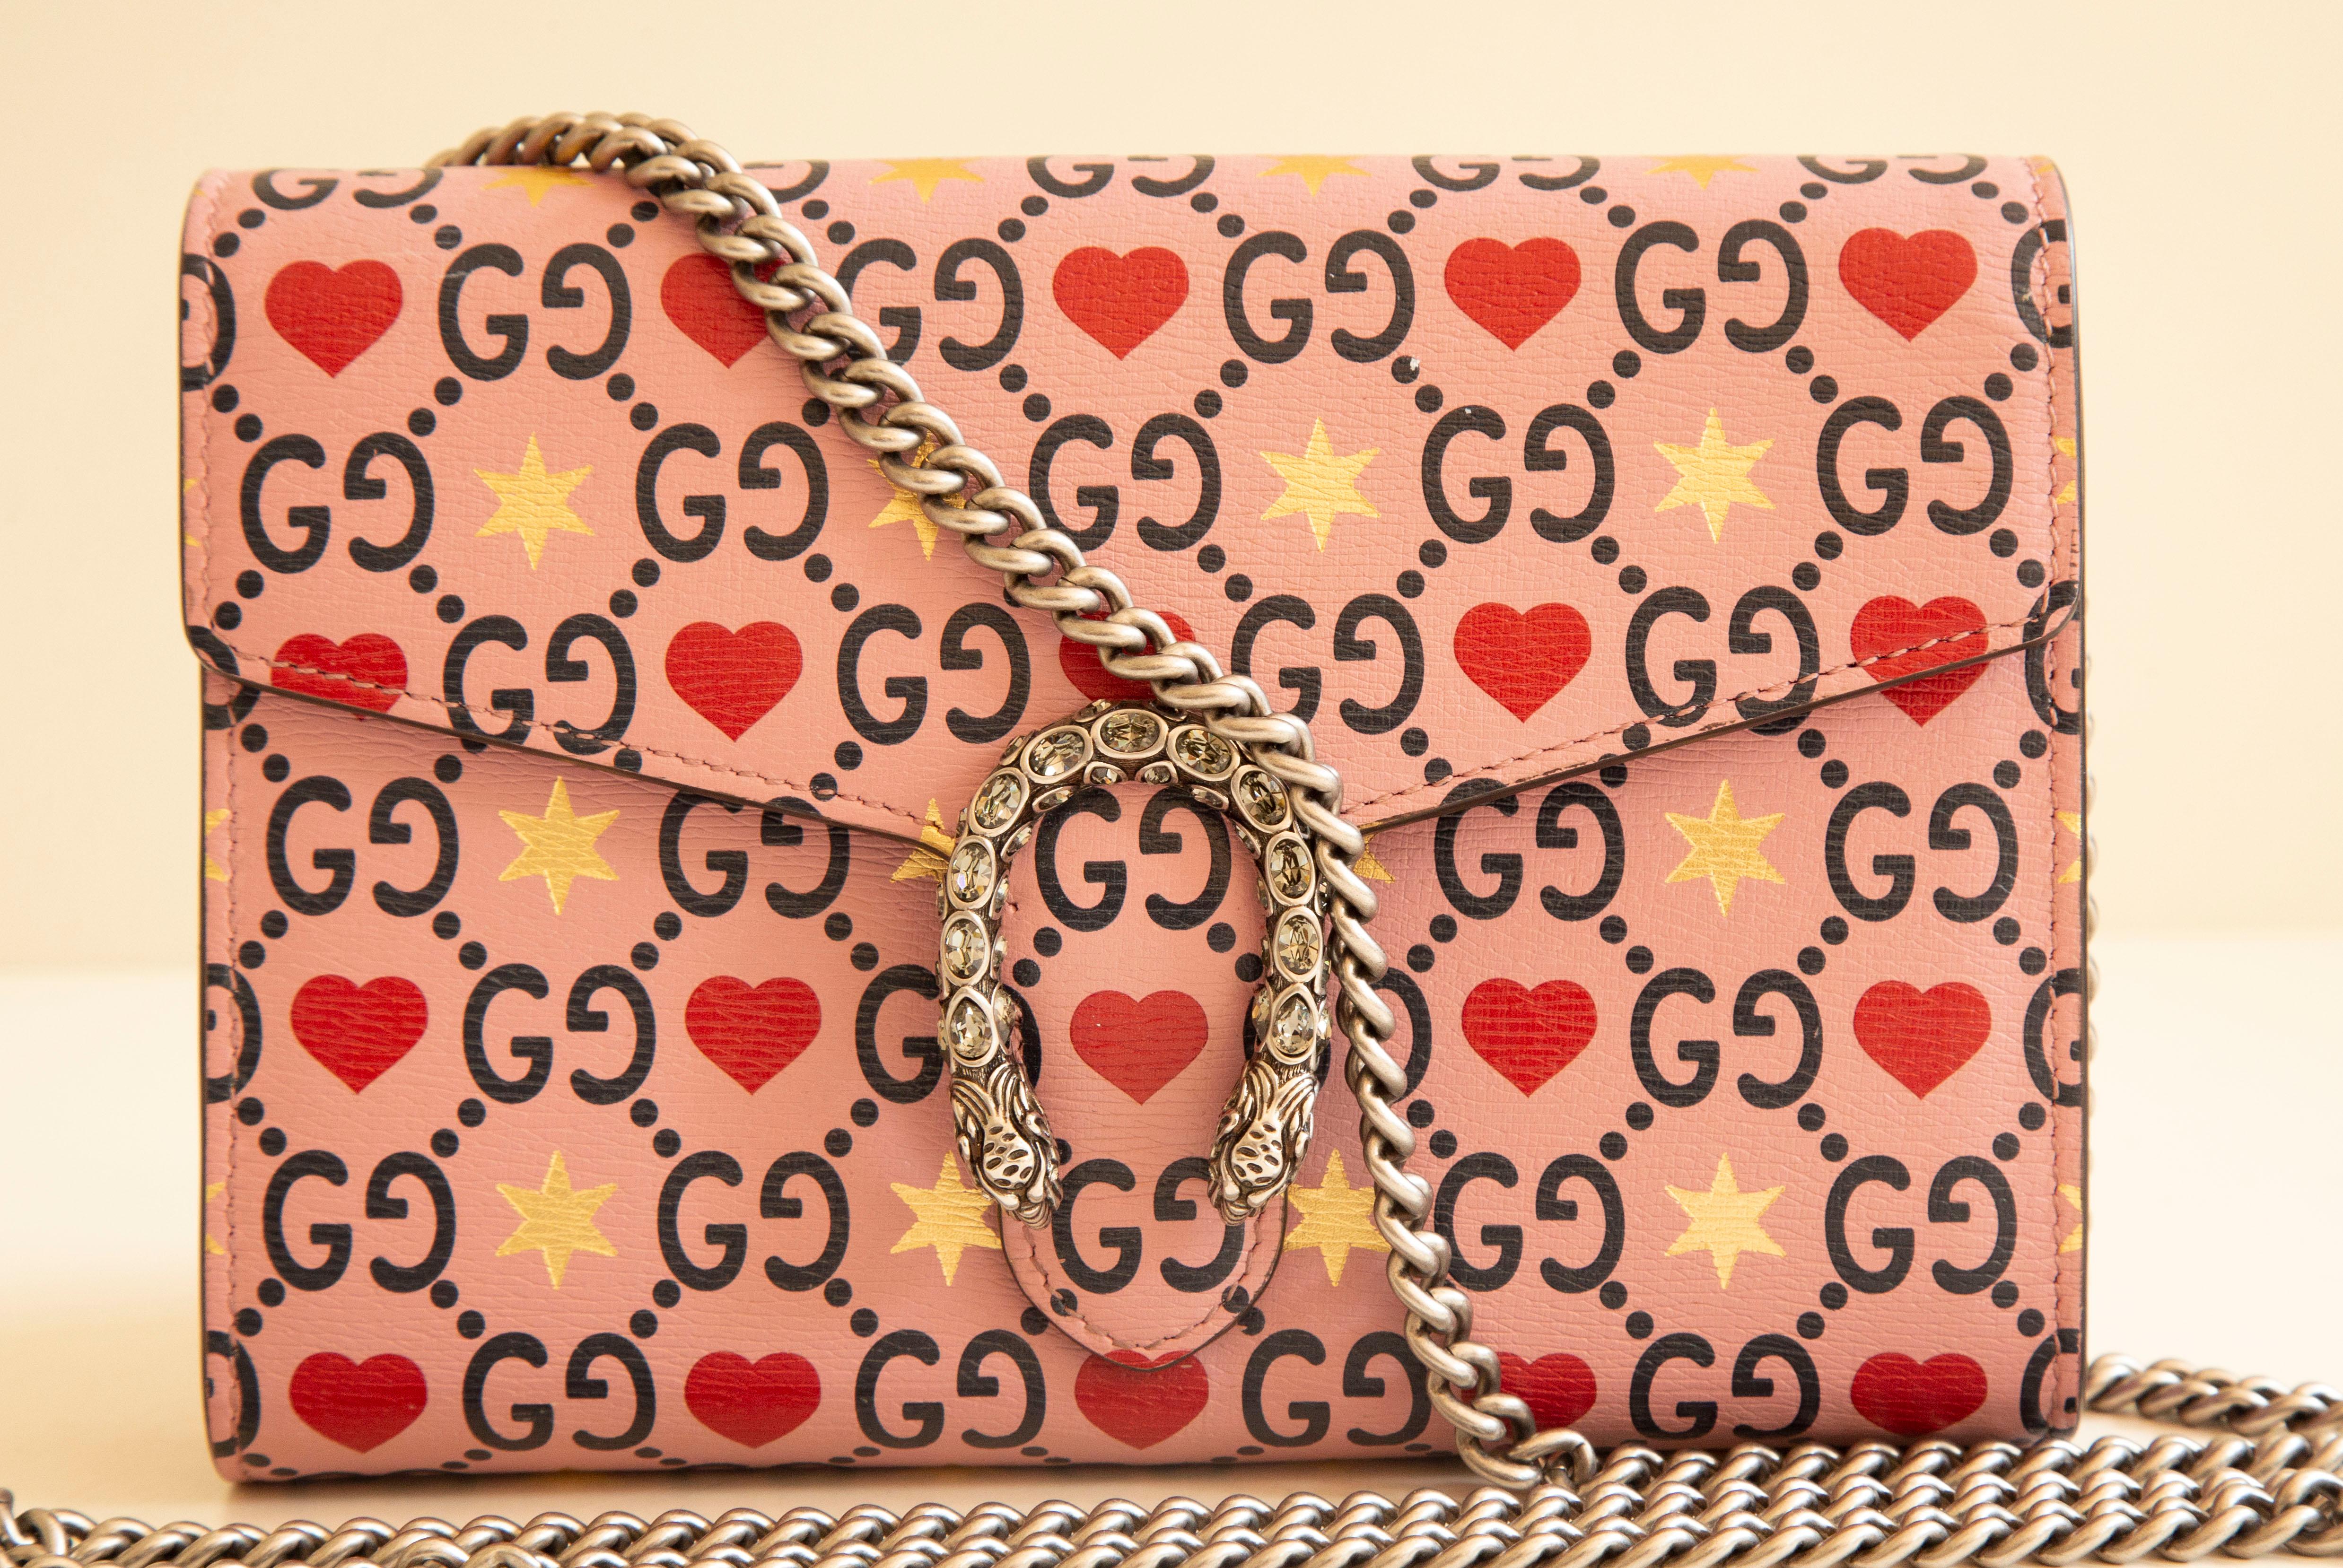 Gucci porte-monnaie sur chaîne/sac à main/sac à bandoulière en édition limitée pour la Saint-Valentin. Le sac est réalisé en cuir de veau gaufré avec la toile GG sur un fond rose avec des décorations en forme de cœur et d'étoile. Le sac est doté